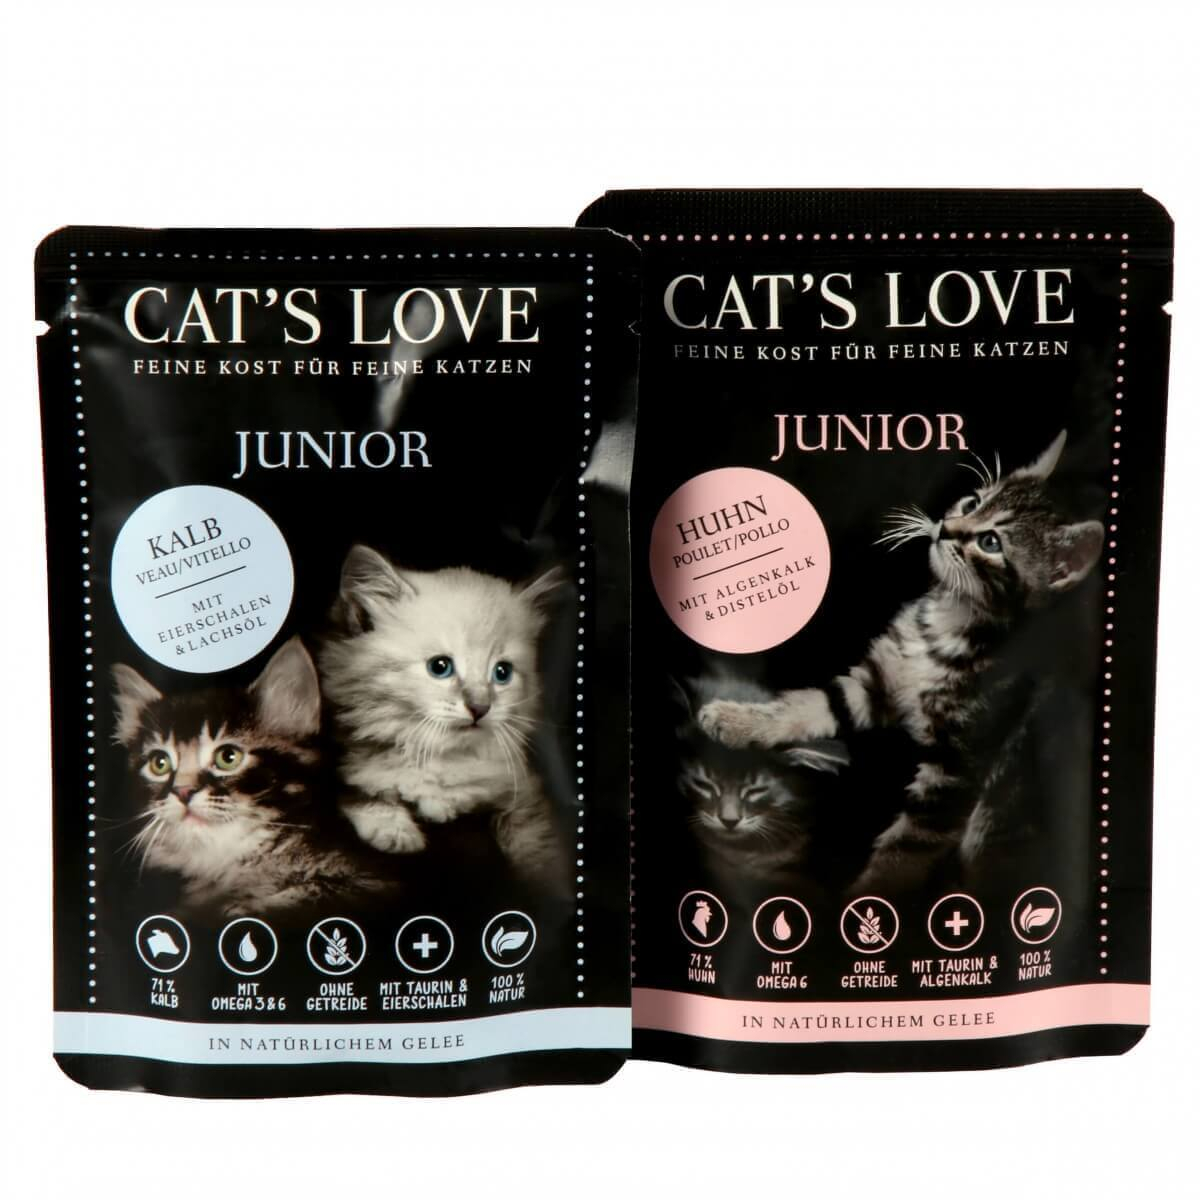 Pâtée CAT'S LOVE pour chaton - 85g - 2 saveurs au choix